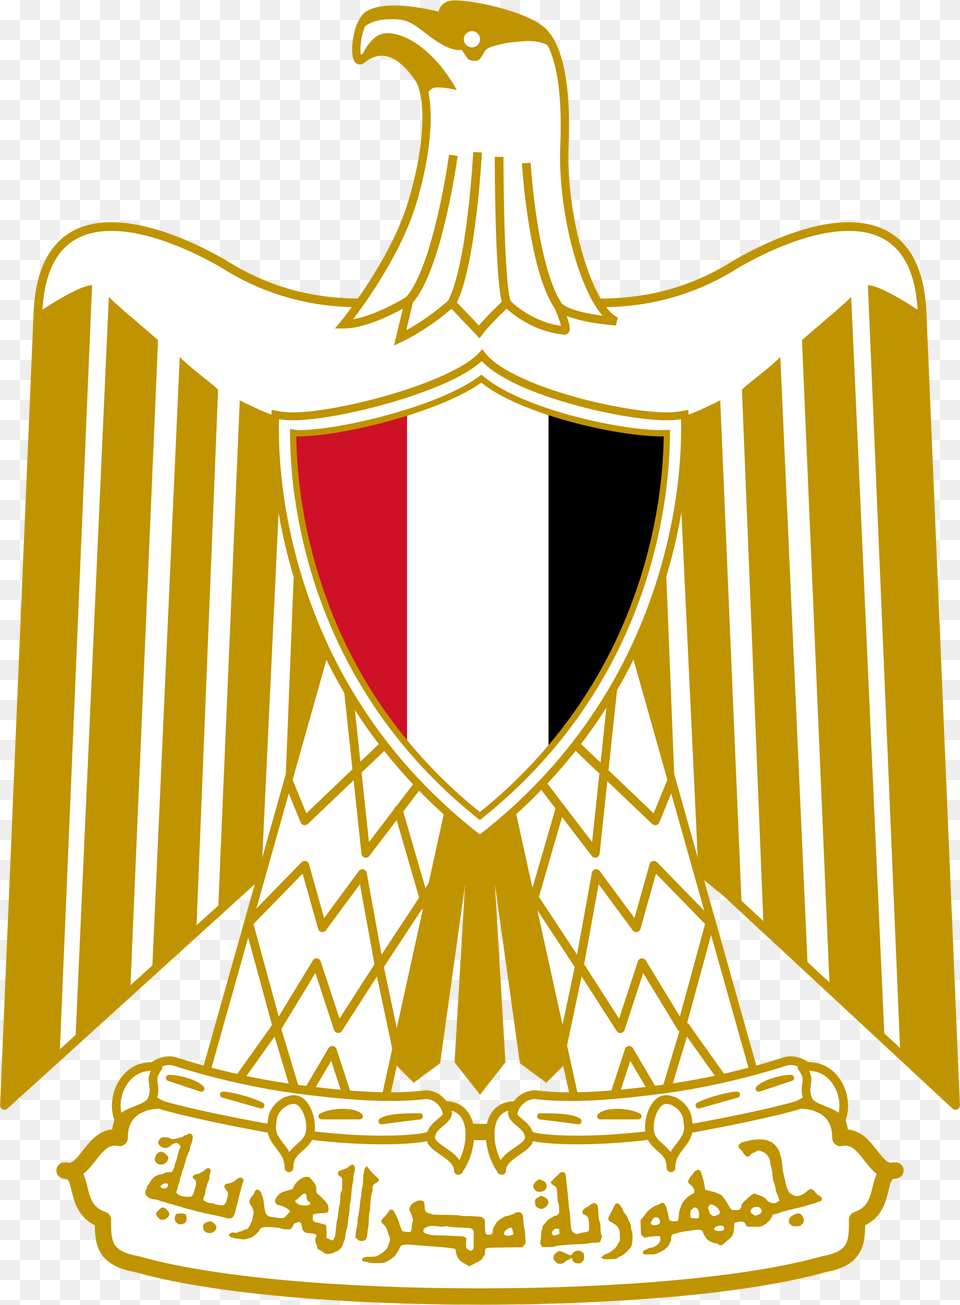 Parliament Of Egypt Escudo De La Bandera De Egipto, Emblem, Logo, Symbol, Gold Png Image